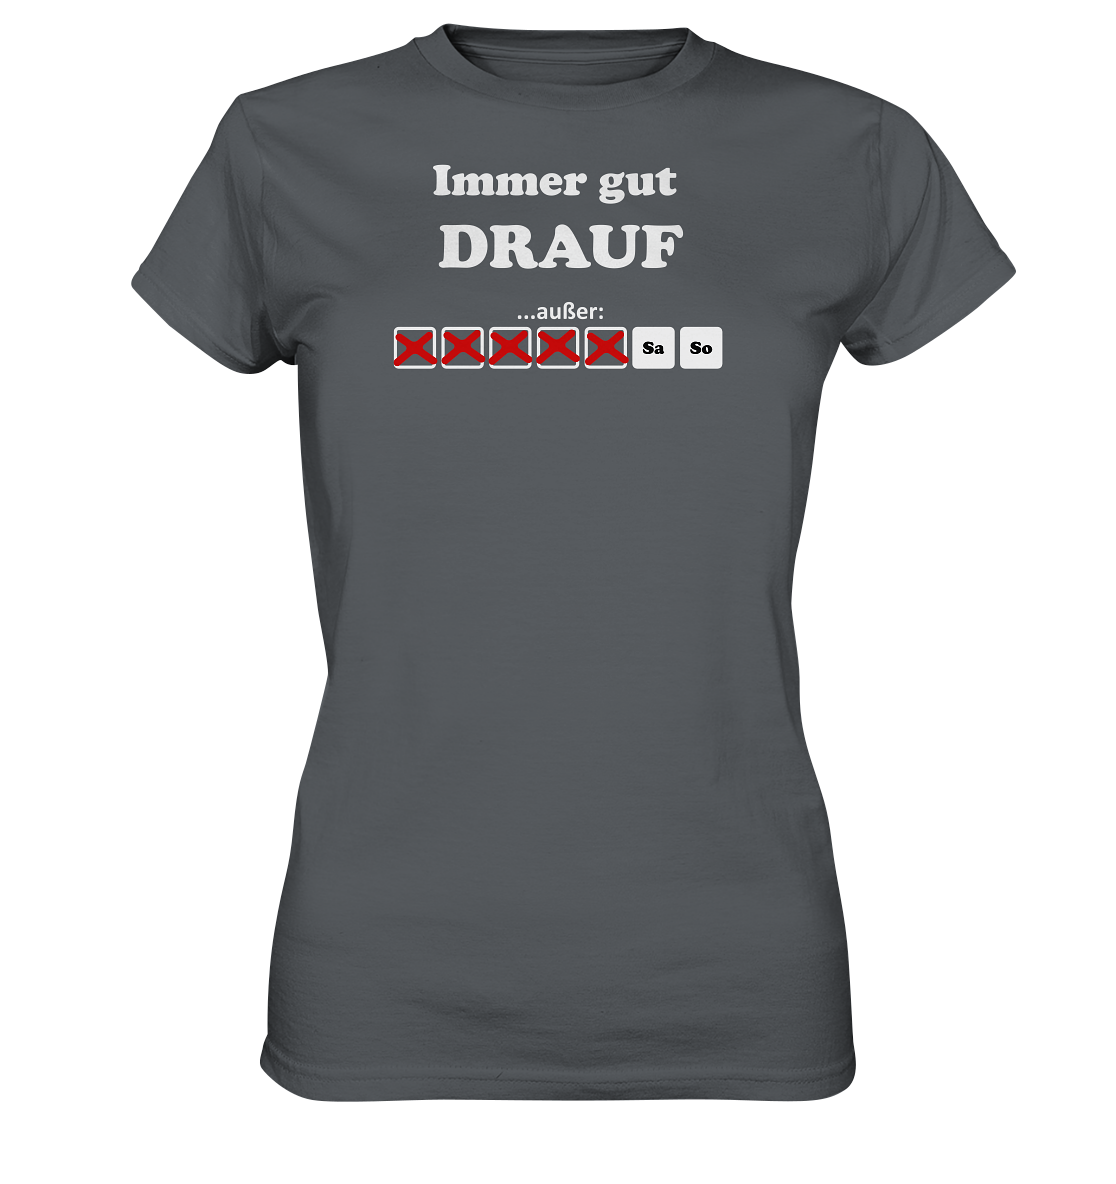 Immer gut drauf - Geile Sprüche, geile Designs - Ladies Premium Shirt